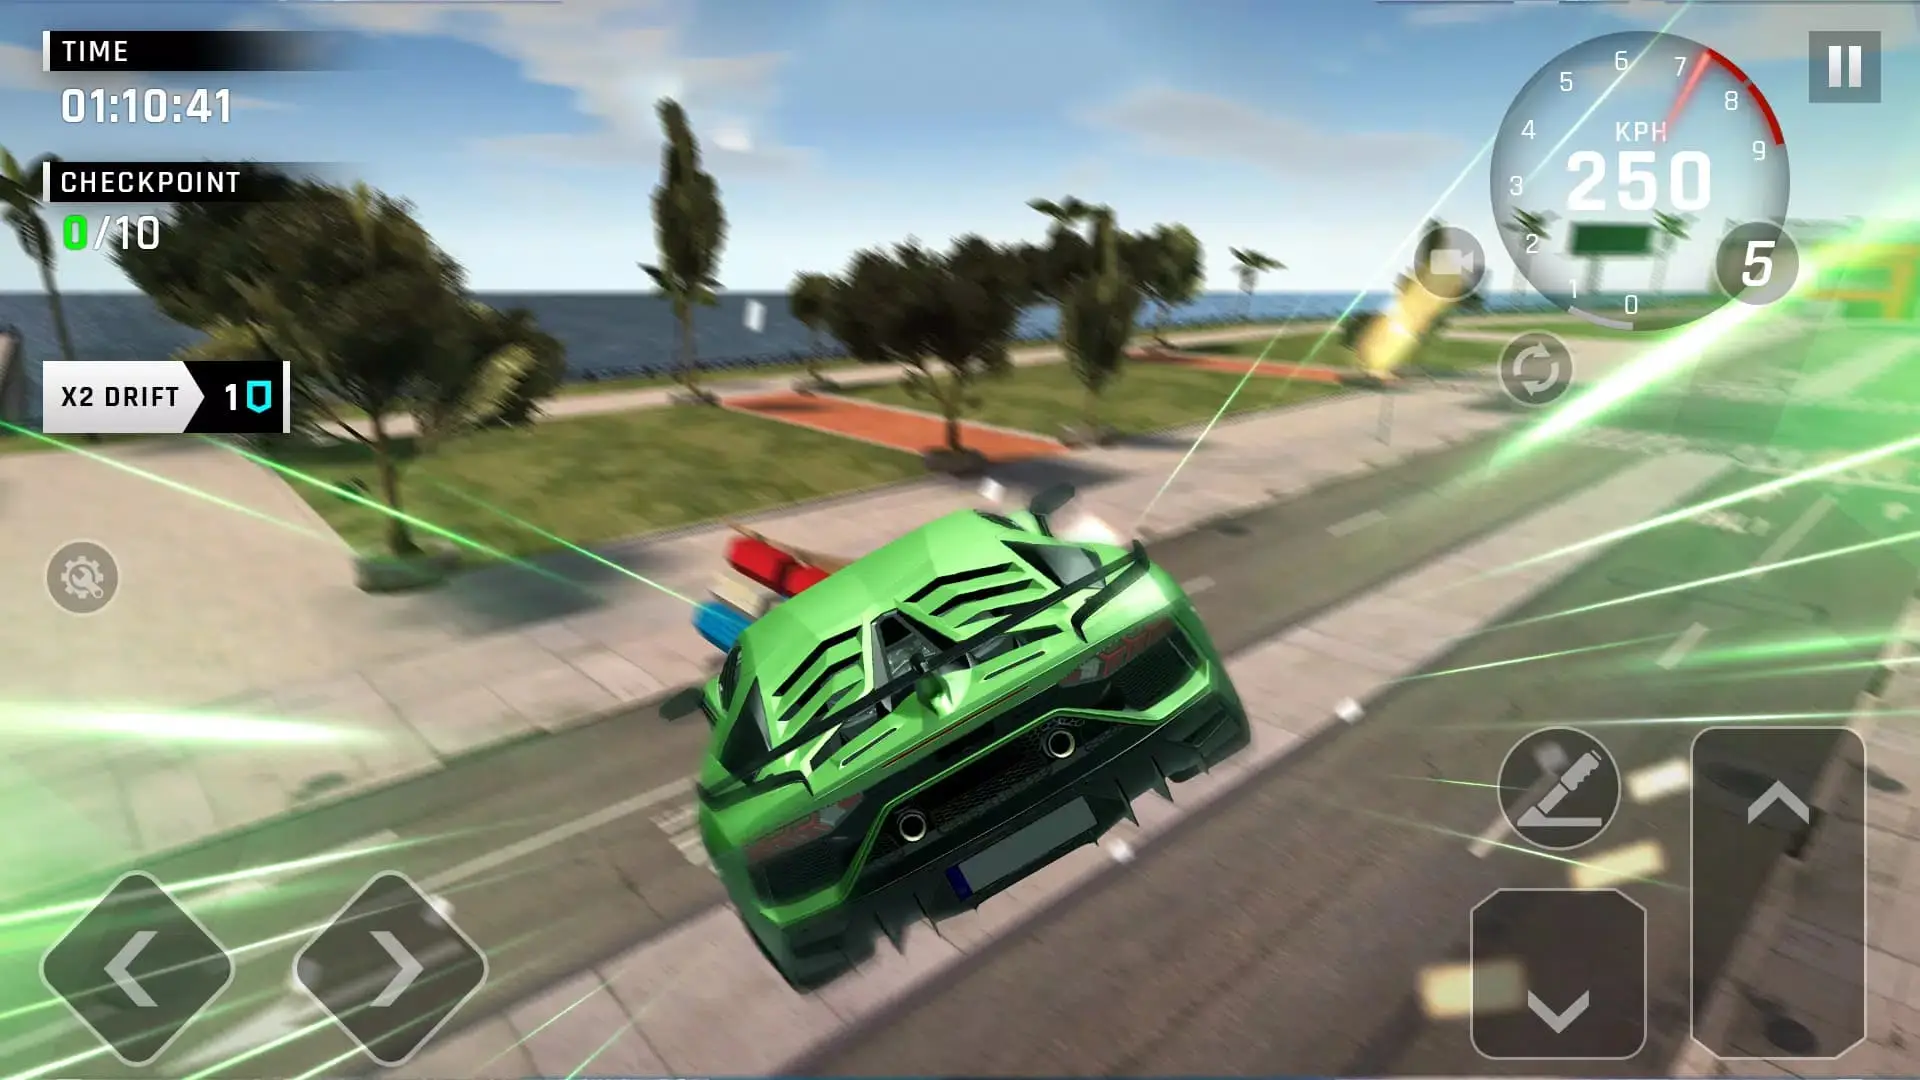 Hướng dẫn cách chơi game đua xe Real Car Driving